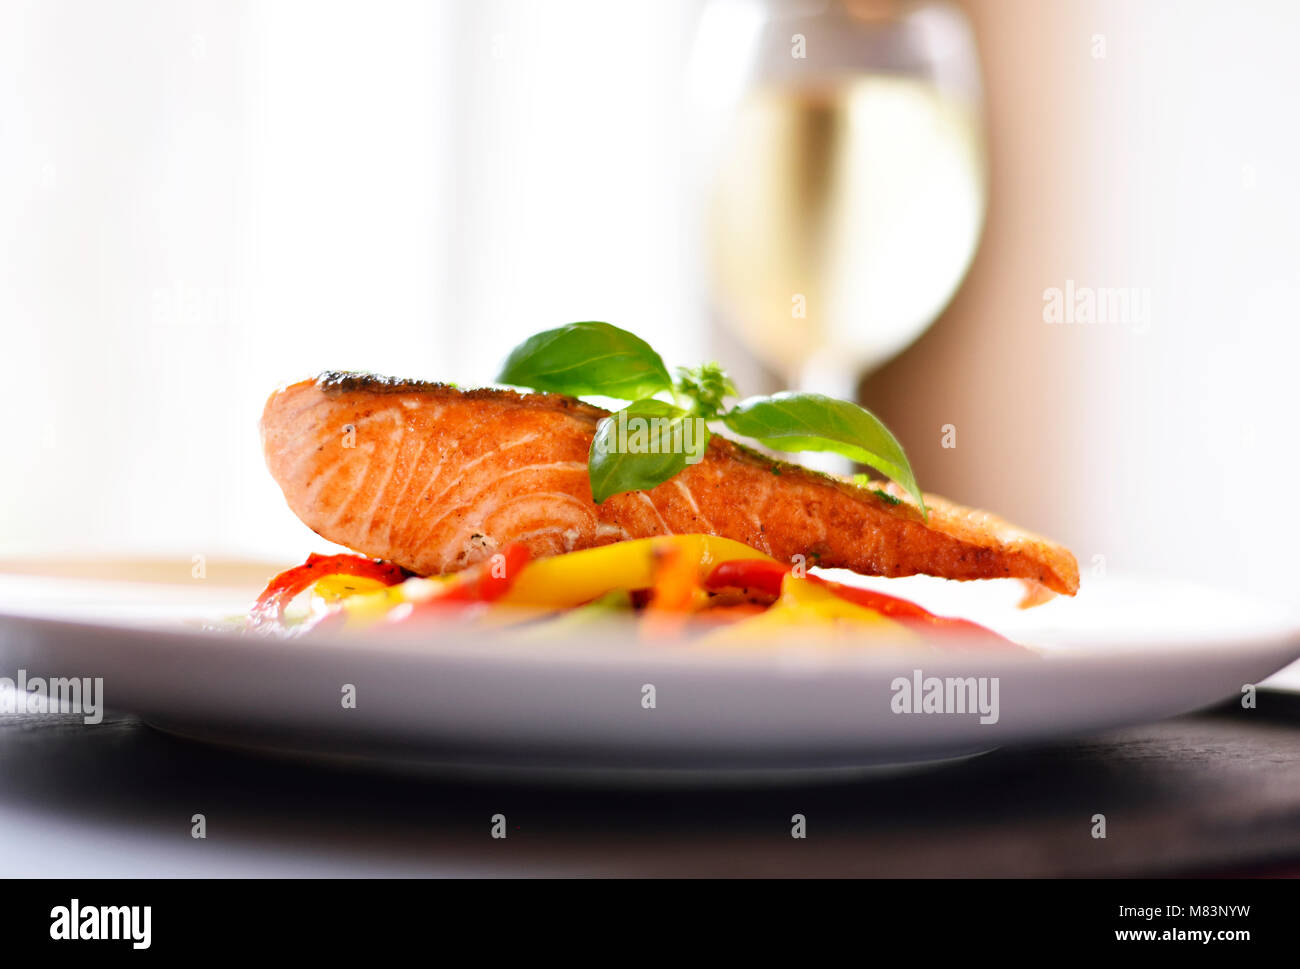 Délicieux filet de saumon et de poivron rouge légumes sur une plaque blanche. Repas sains, décoré de feuilles de basilic. Scène gastronomique. Banque D'Images